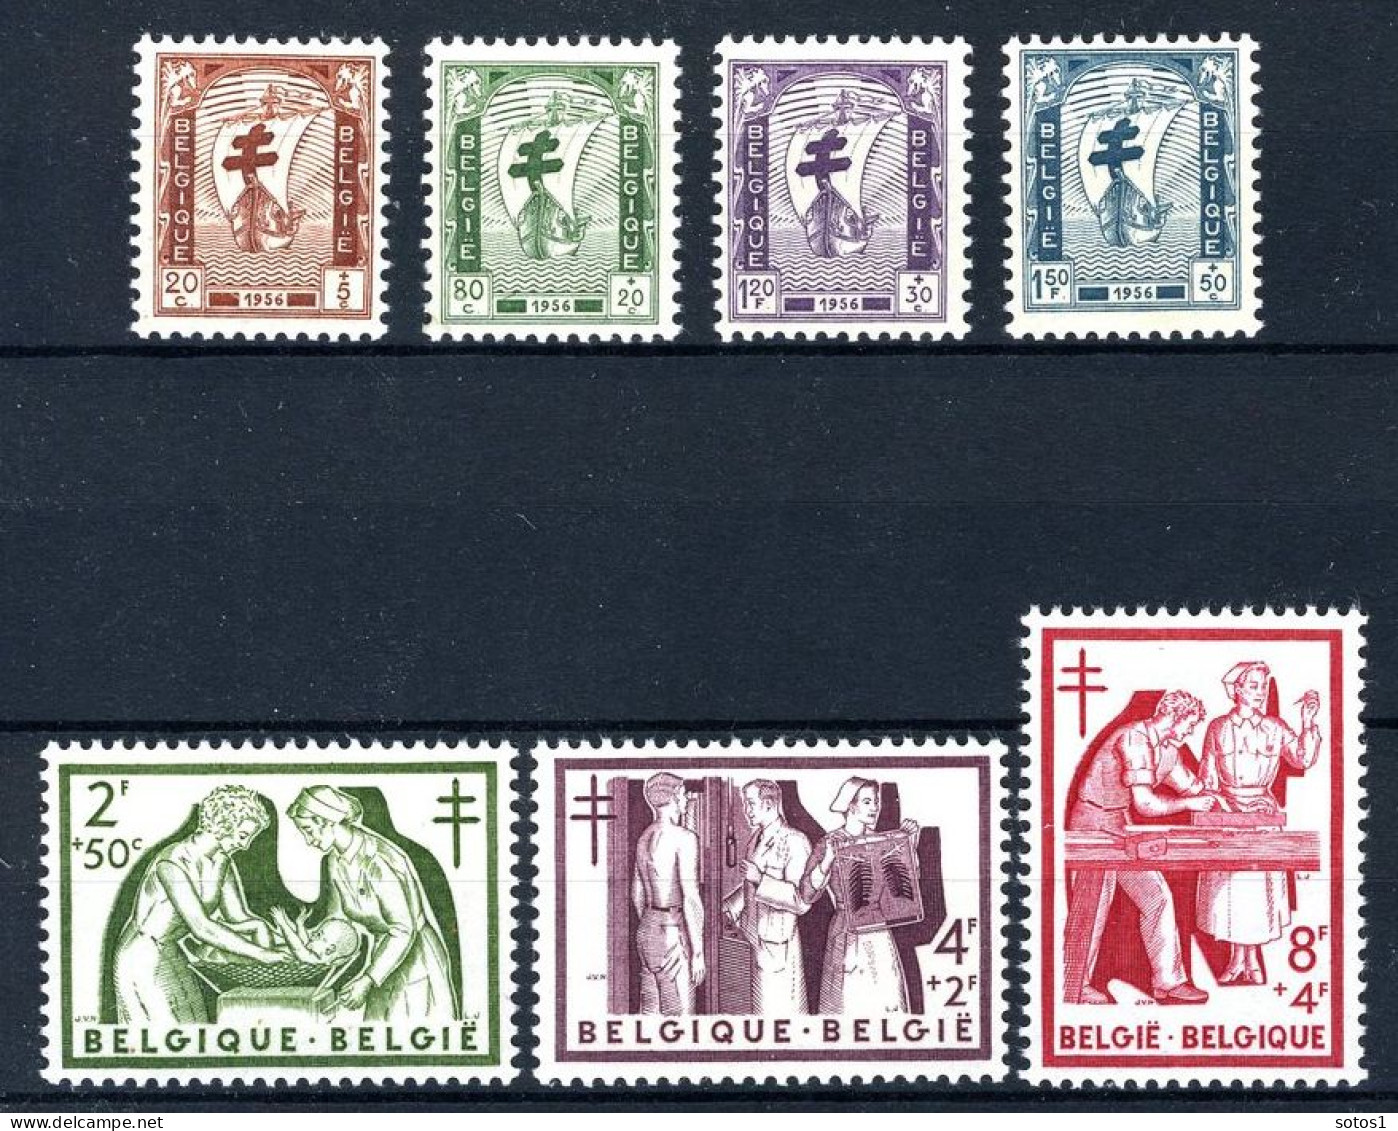 998/1004 MNH 1956 - Antiteringzegels. - Ungebraucht